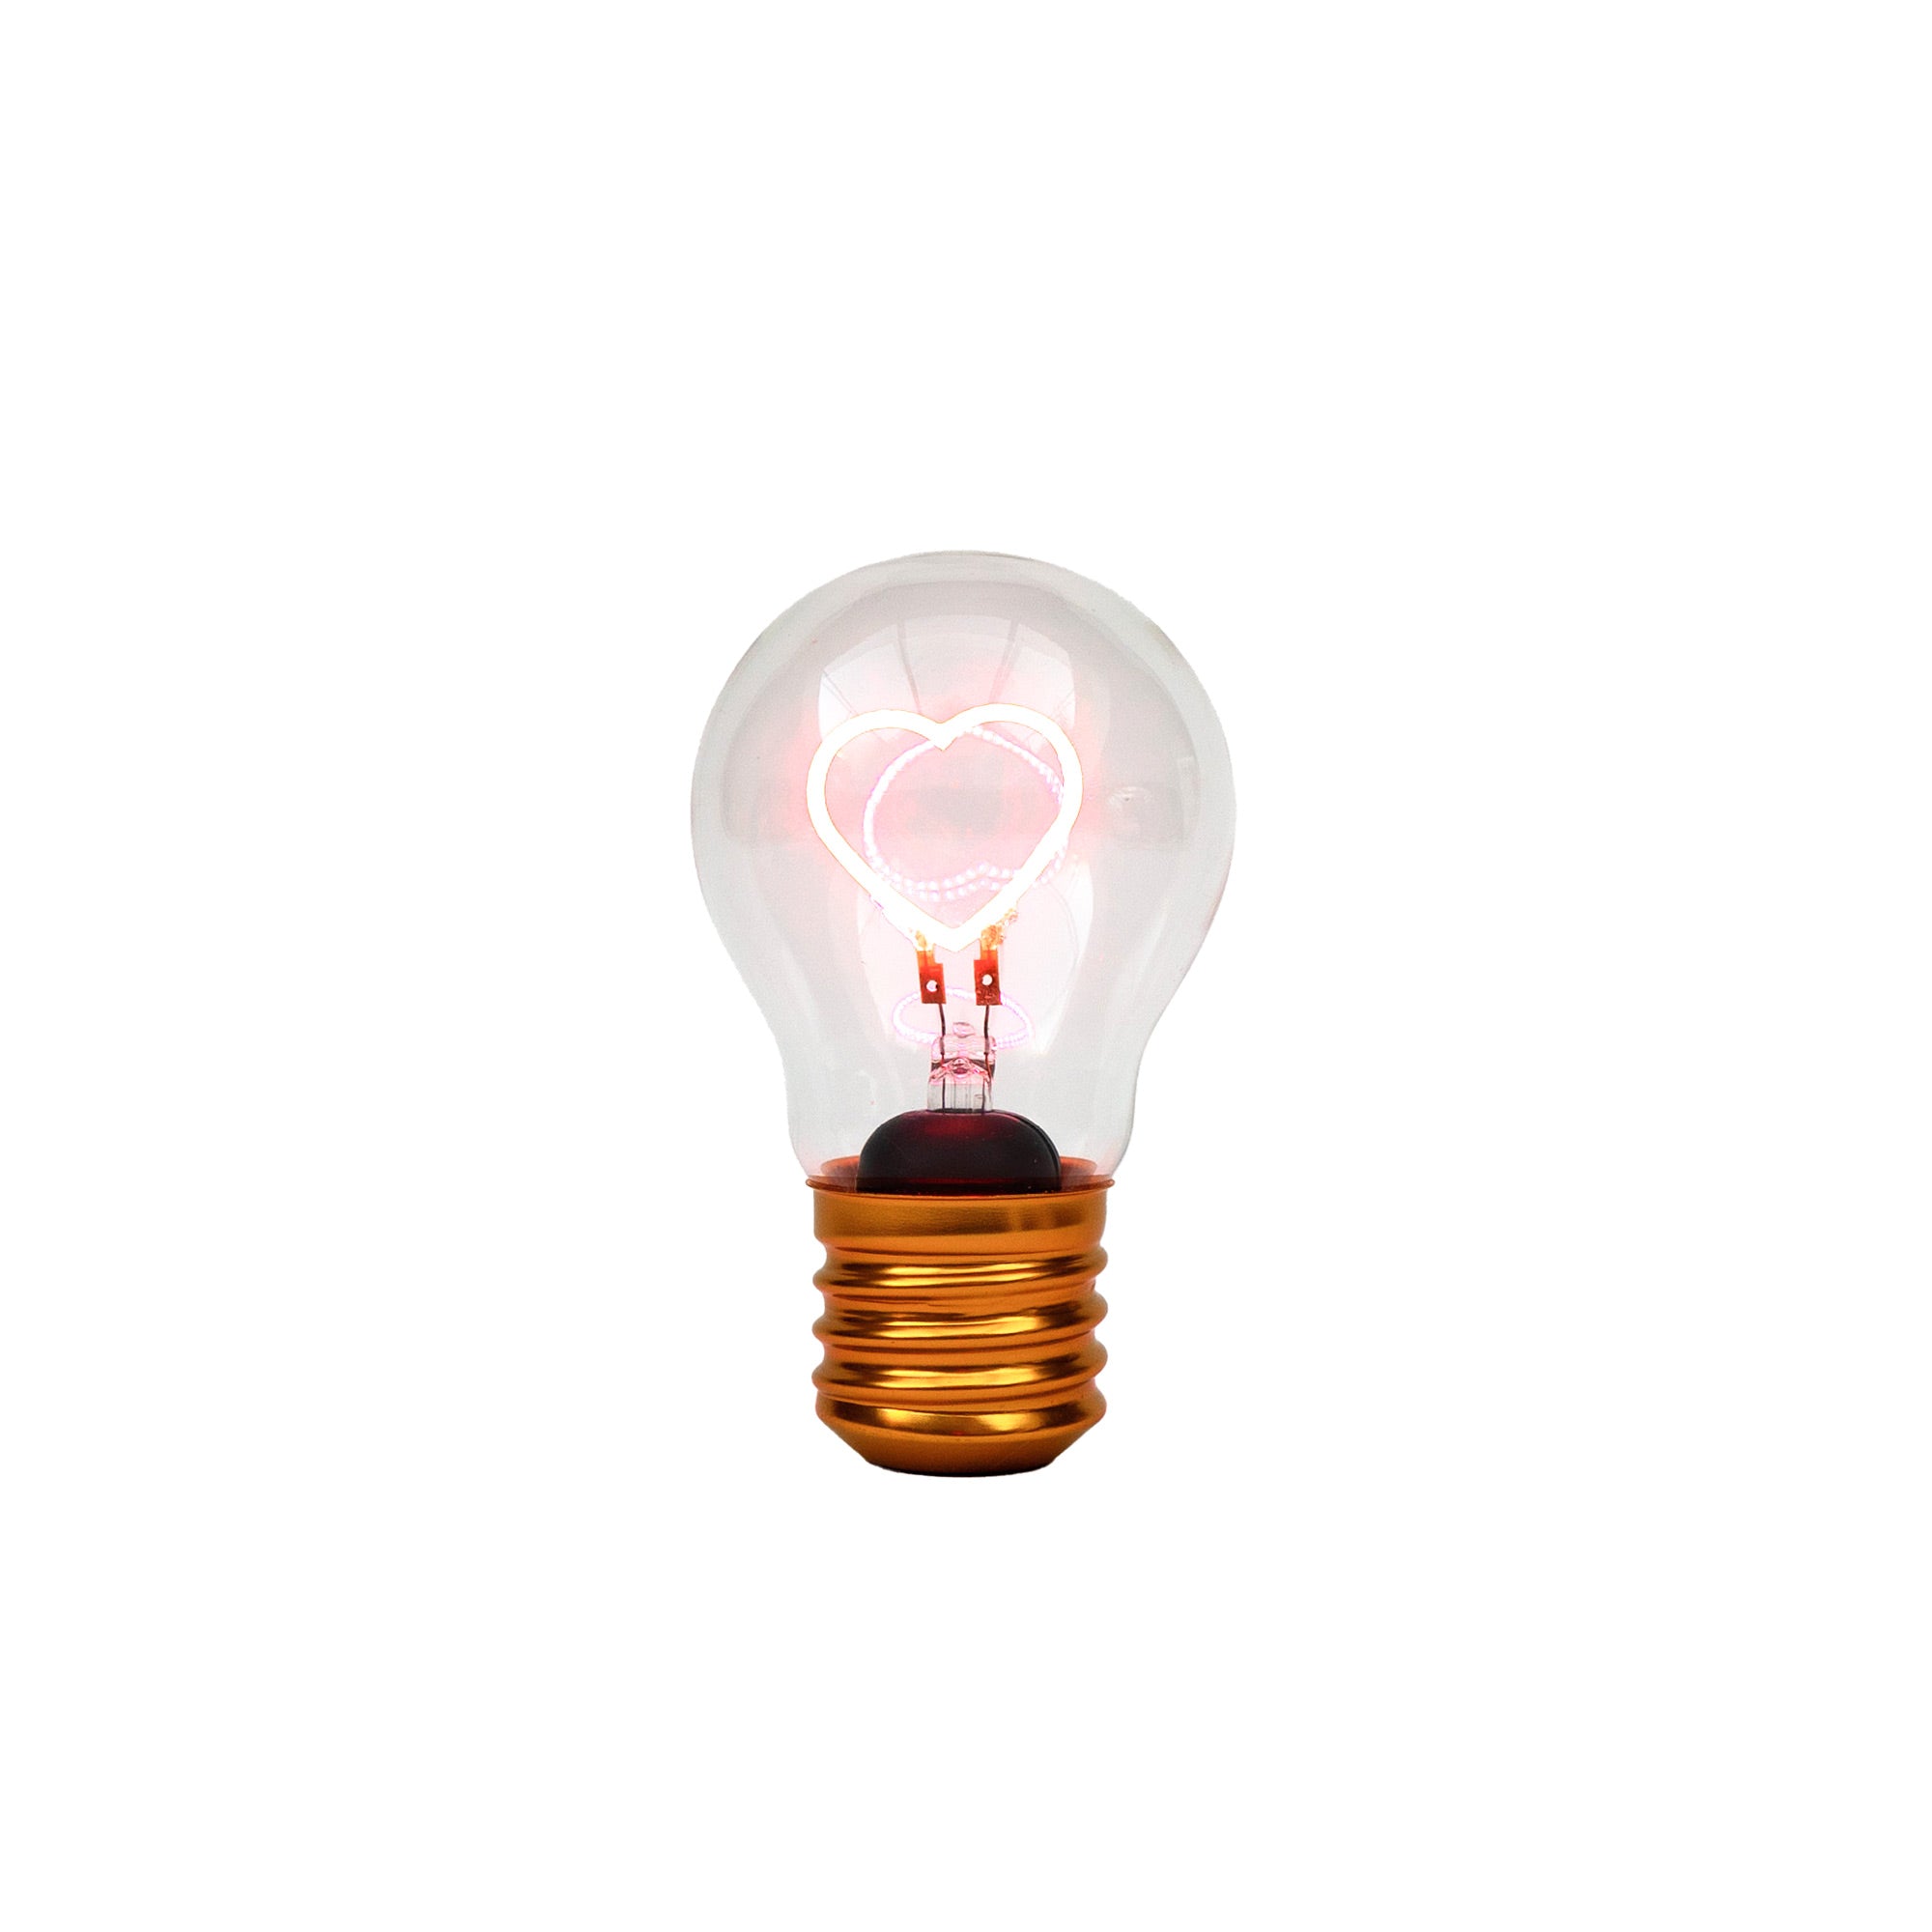 Cordless Heart Lightbulb image 1